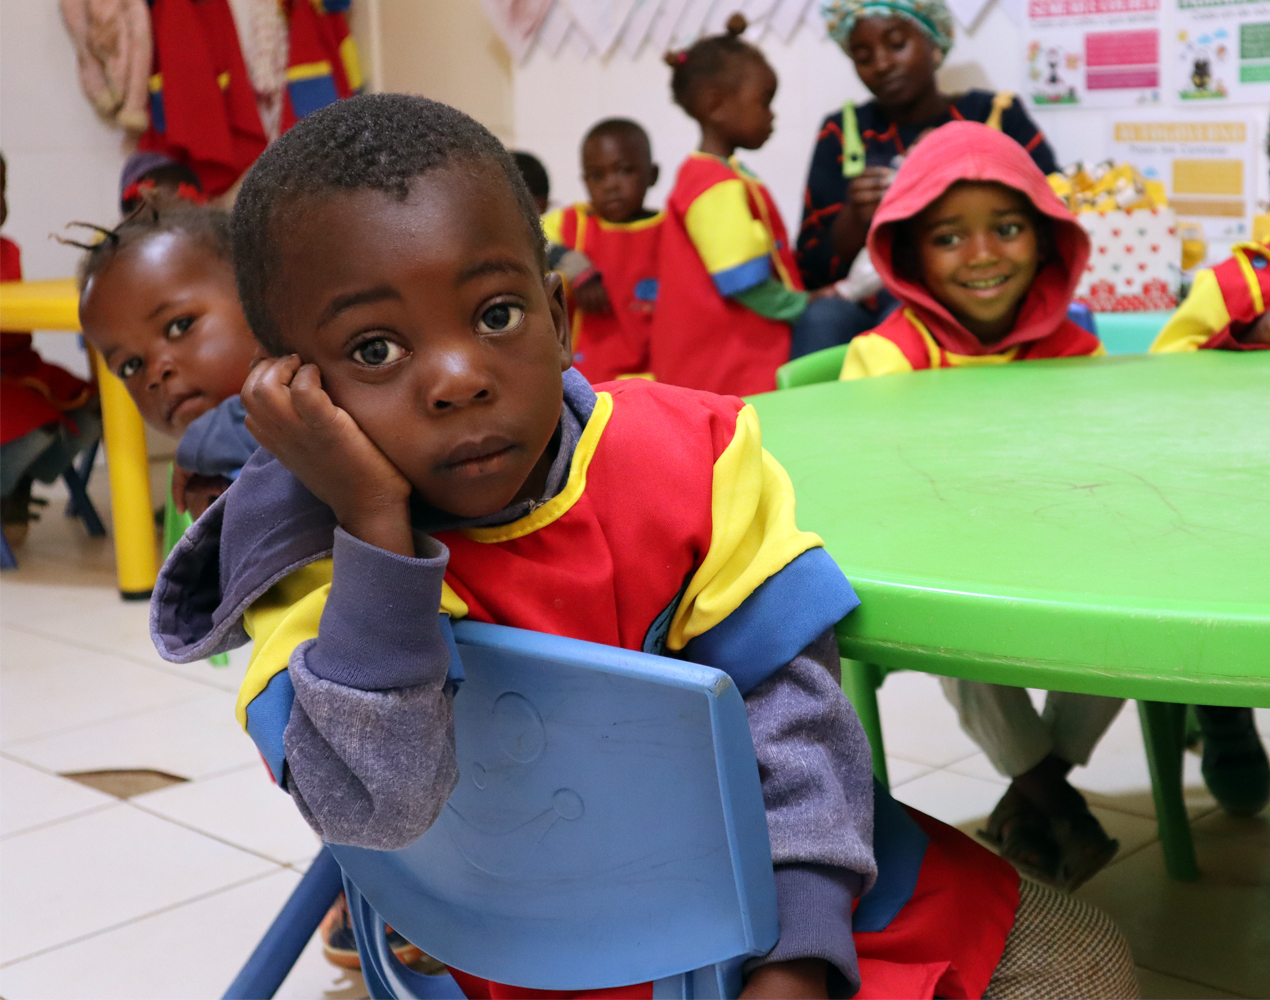 Angolalaisia päiväkotilapsia värikkäissä asuissaan pyöreän pöydän ympärillä. Etualalla pikkupoika nojaa kättään poskeensa ja katsoo suoraan kameraan.